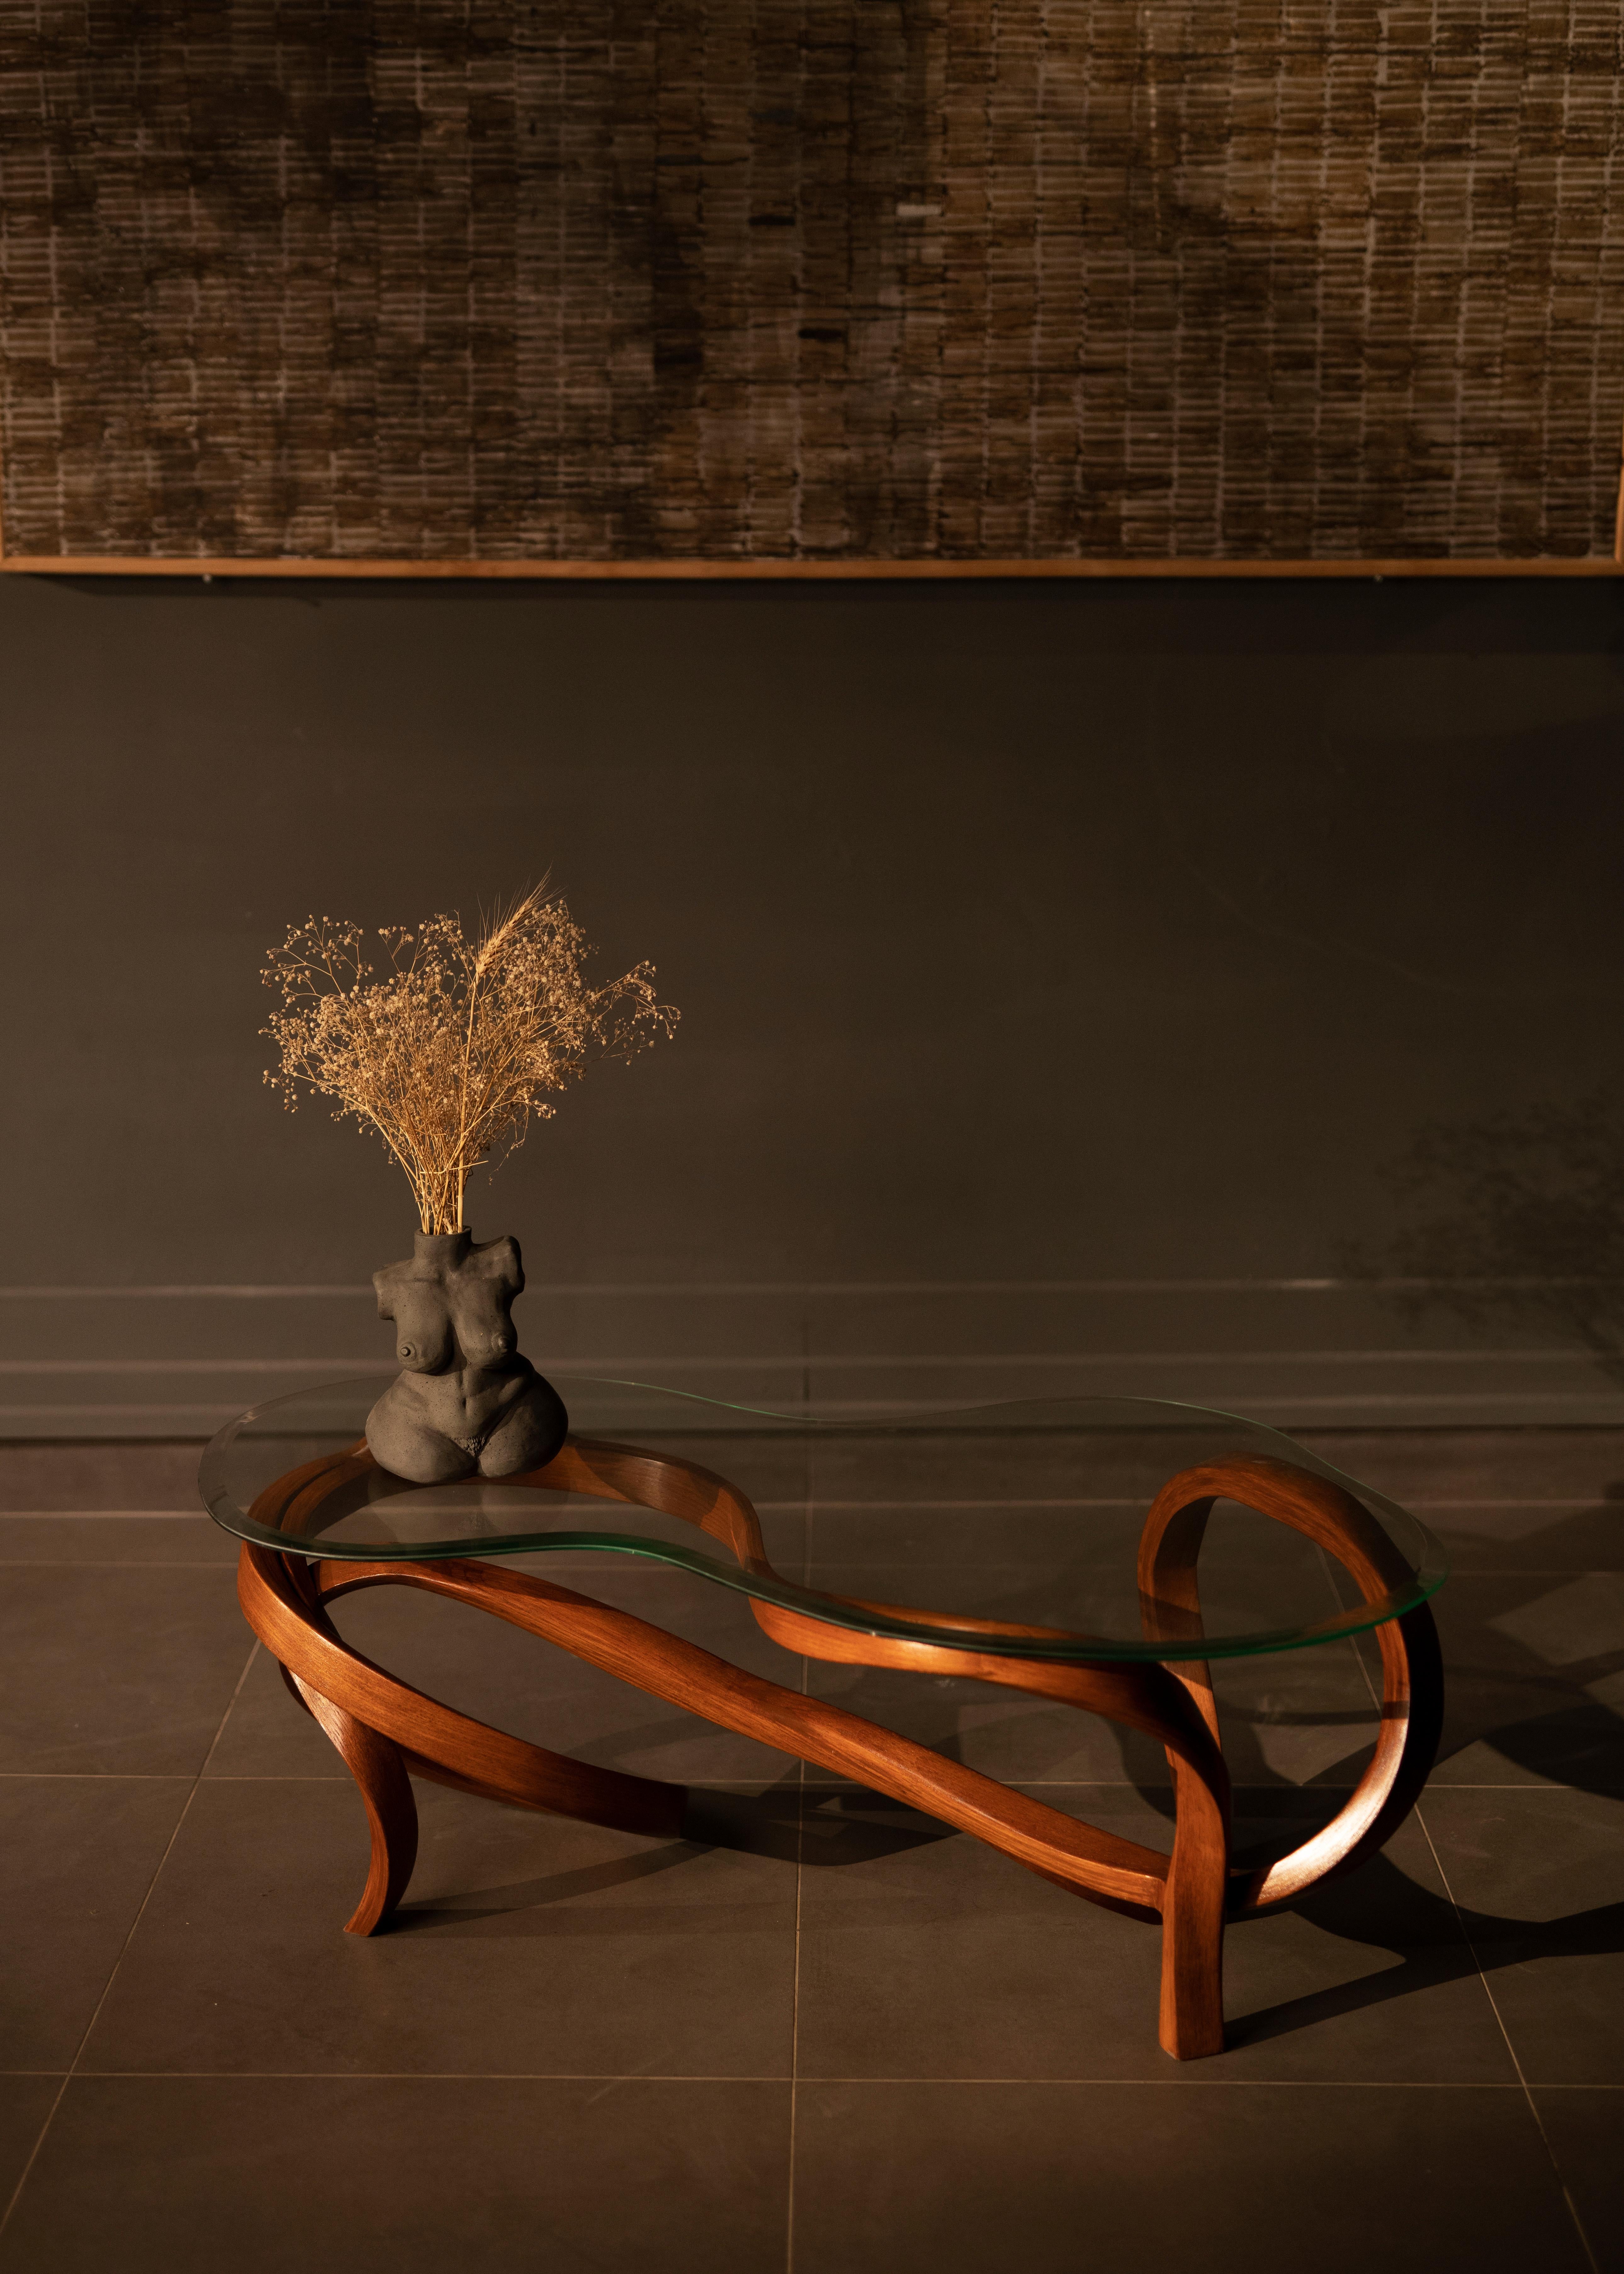 Die Vrksa-Serie basiert auf der Biegung von Massivholz zur Herstellung der Stücke. Dies hat es uns ermöglicht, handgefertigte Möbel in einer einzigartigen Ästhetik zu entwerfen, in der der natürliche Fluss des Holzes die Zügel des Designs übernimmt.